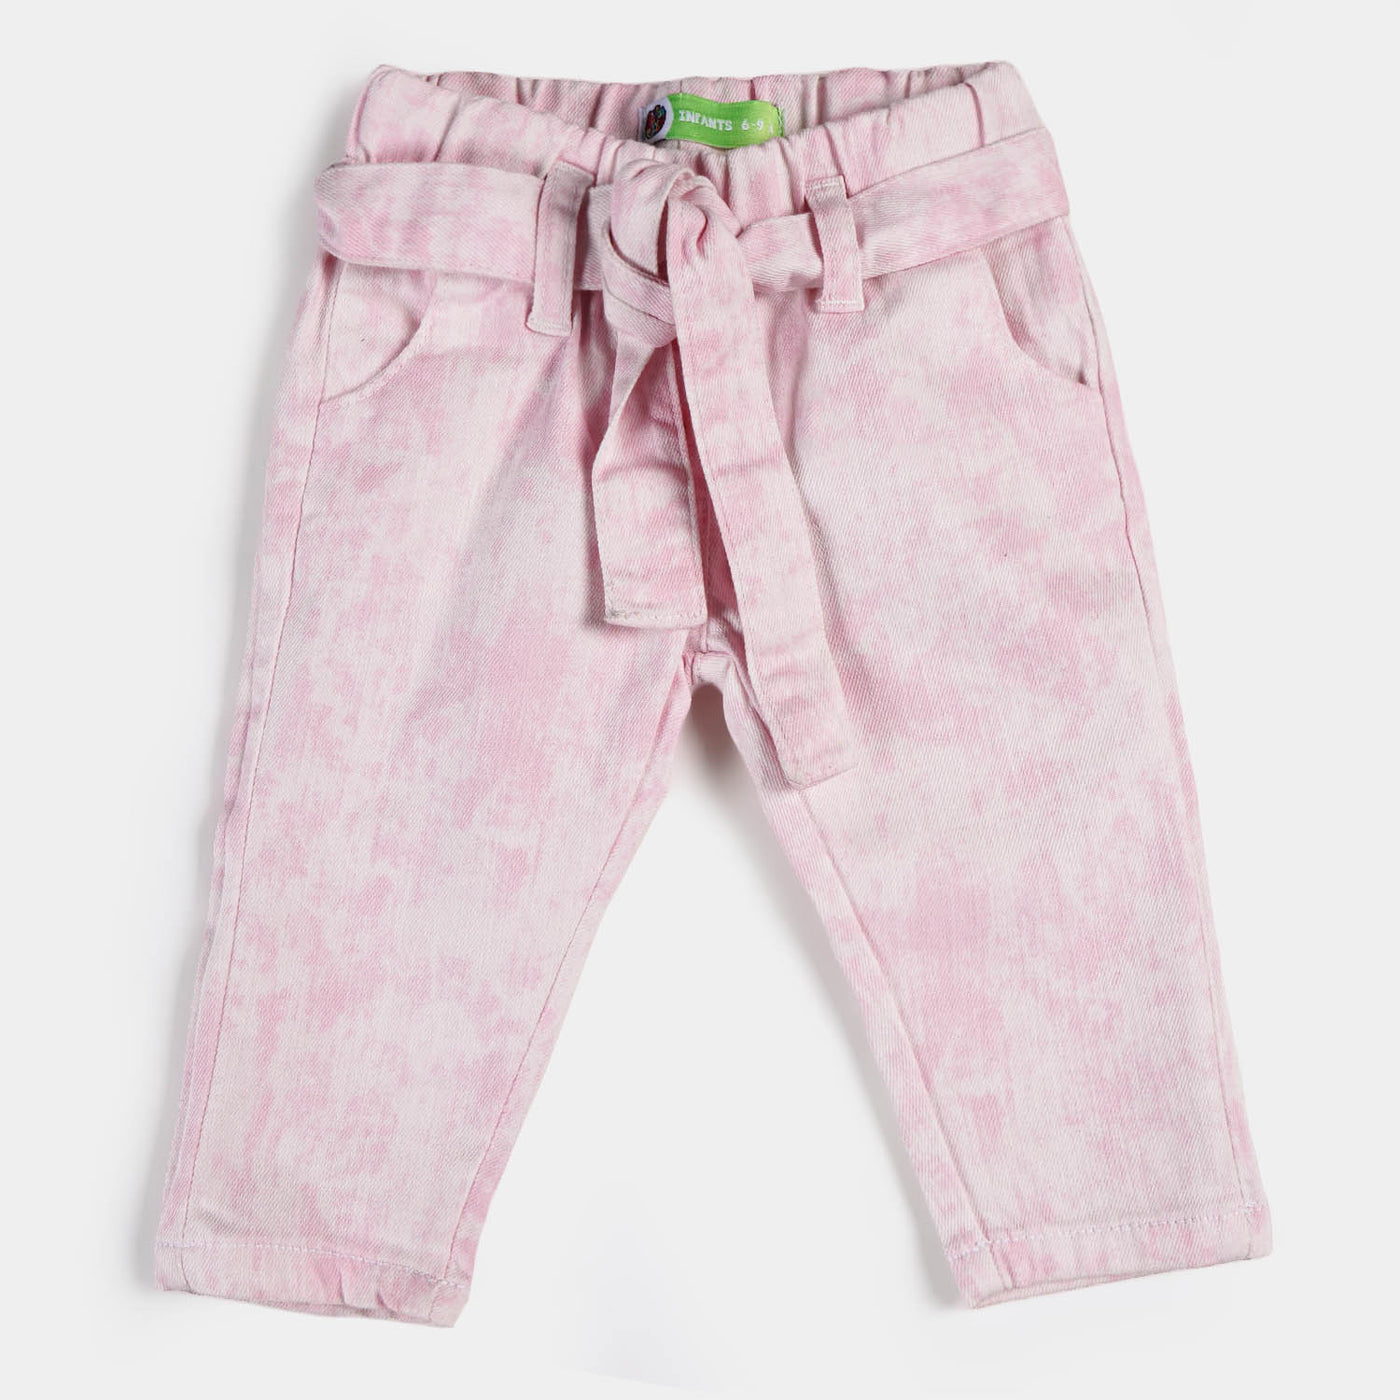 Infant Girls Cotton Pant Pink Dye - Tie & Dye